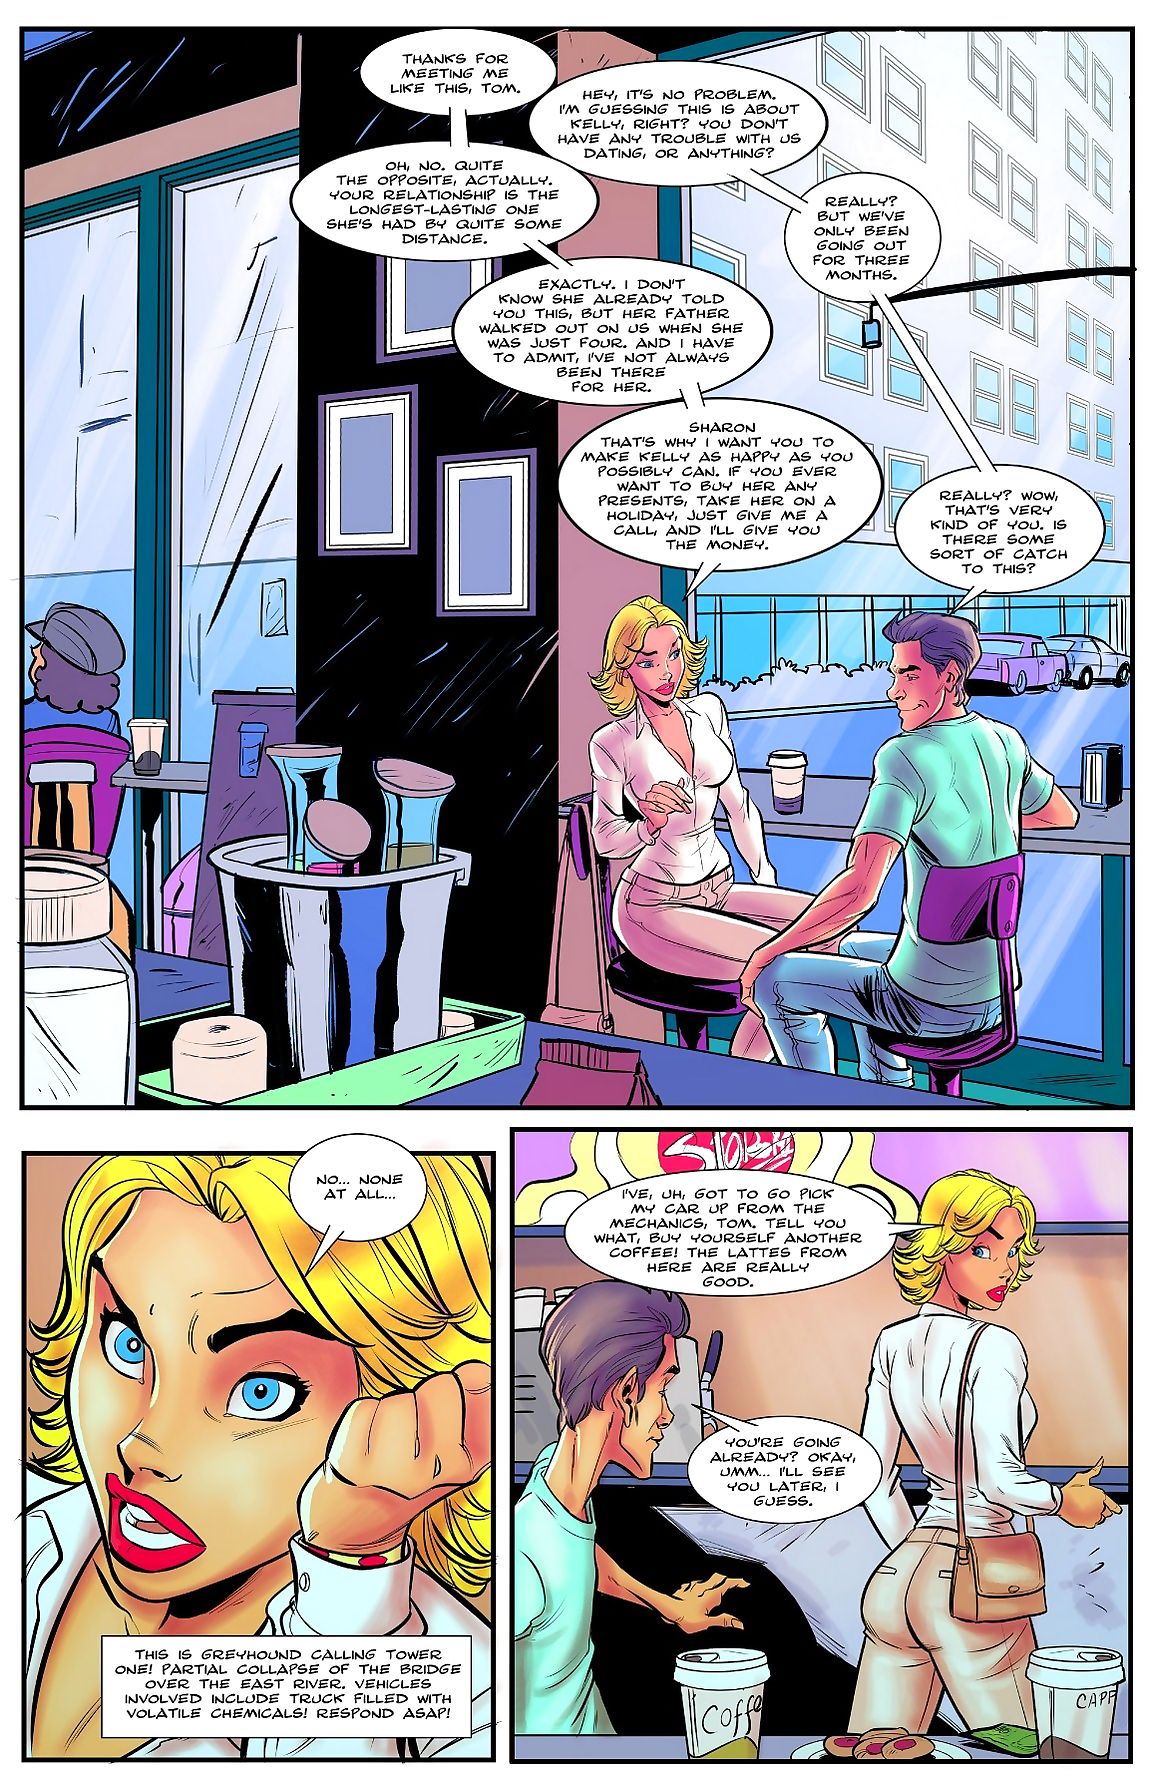 il superheroine’s figlia 2 page 1